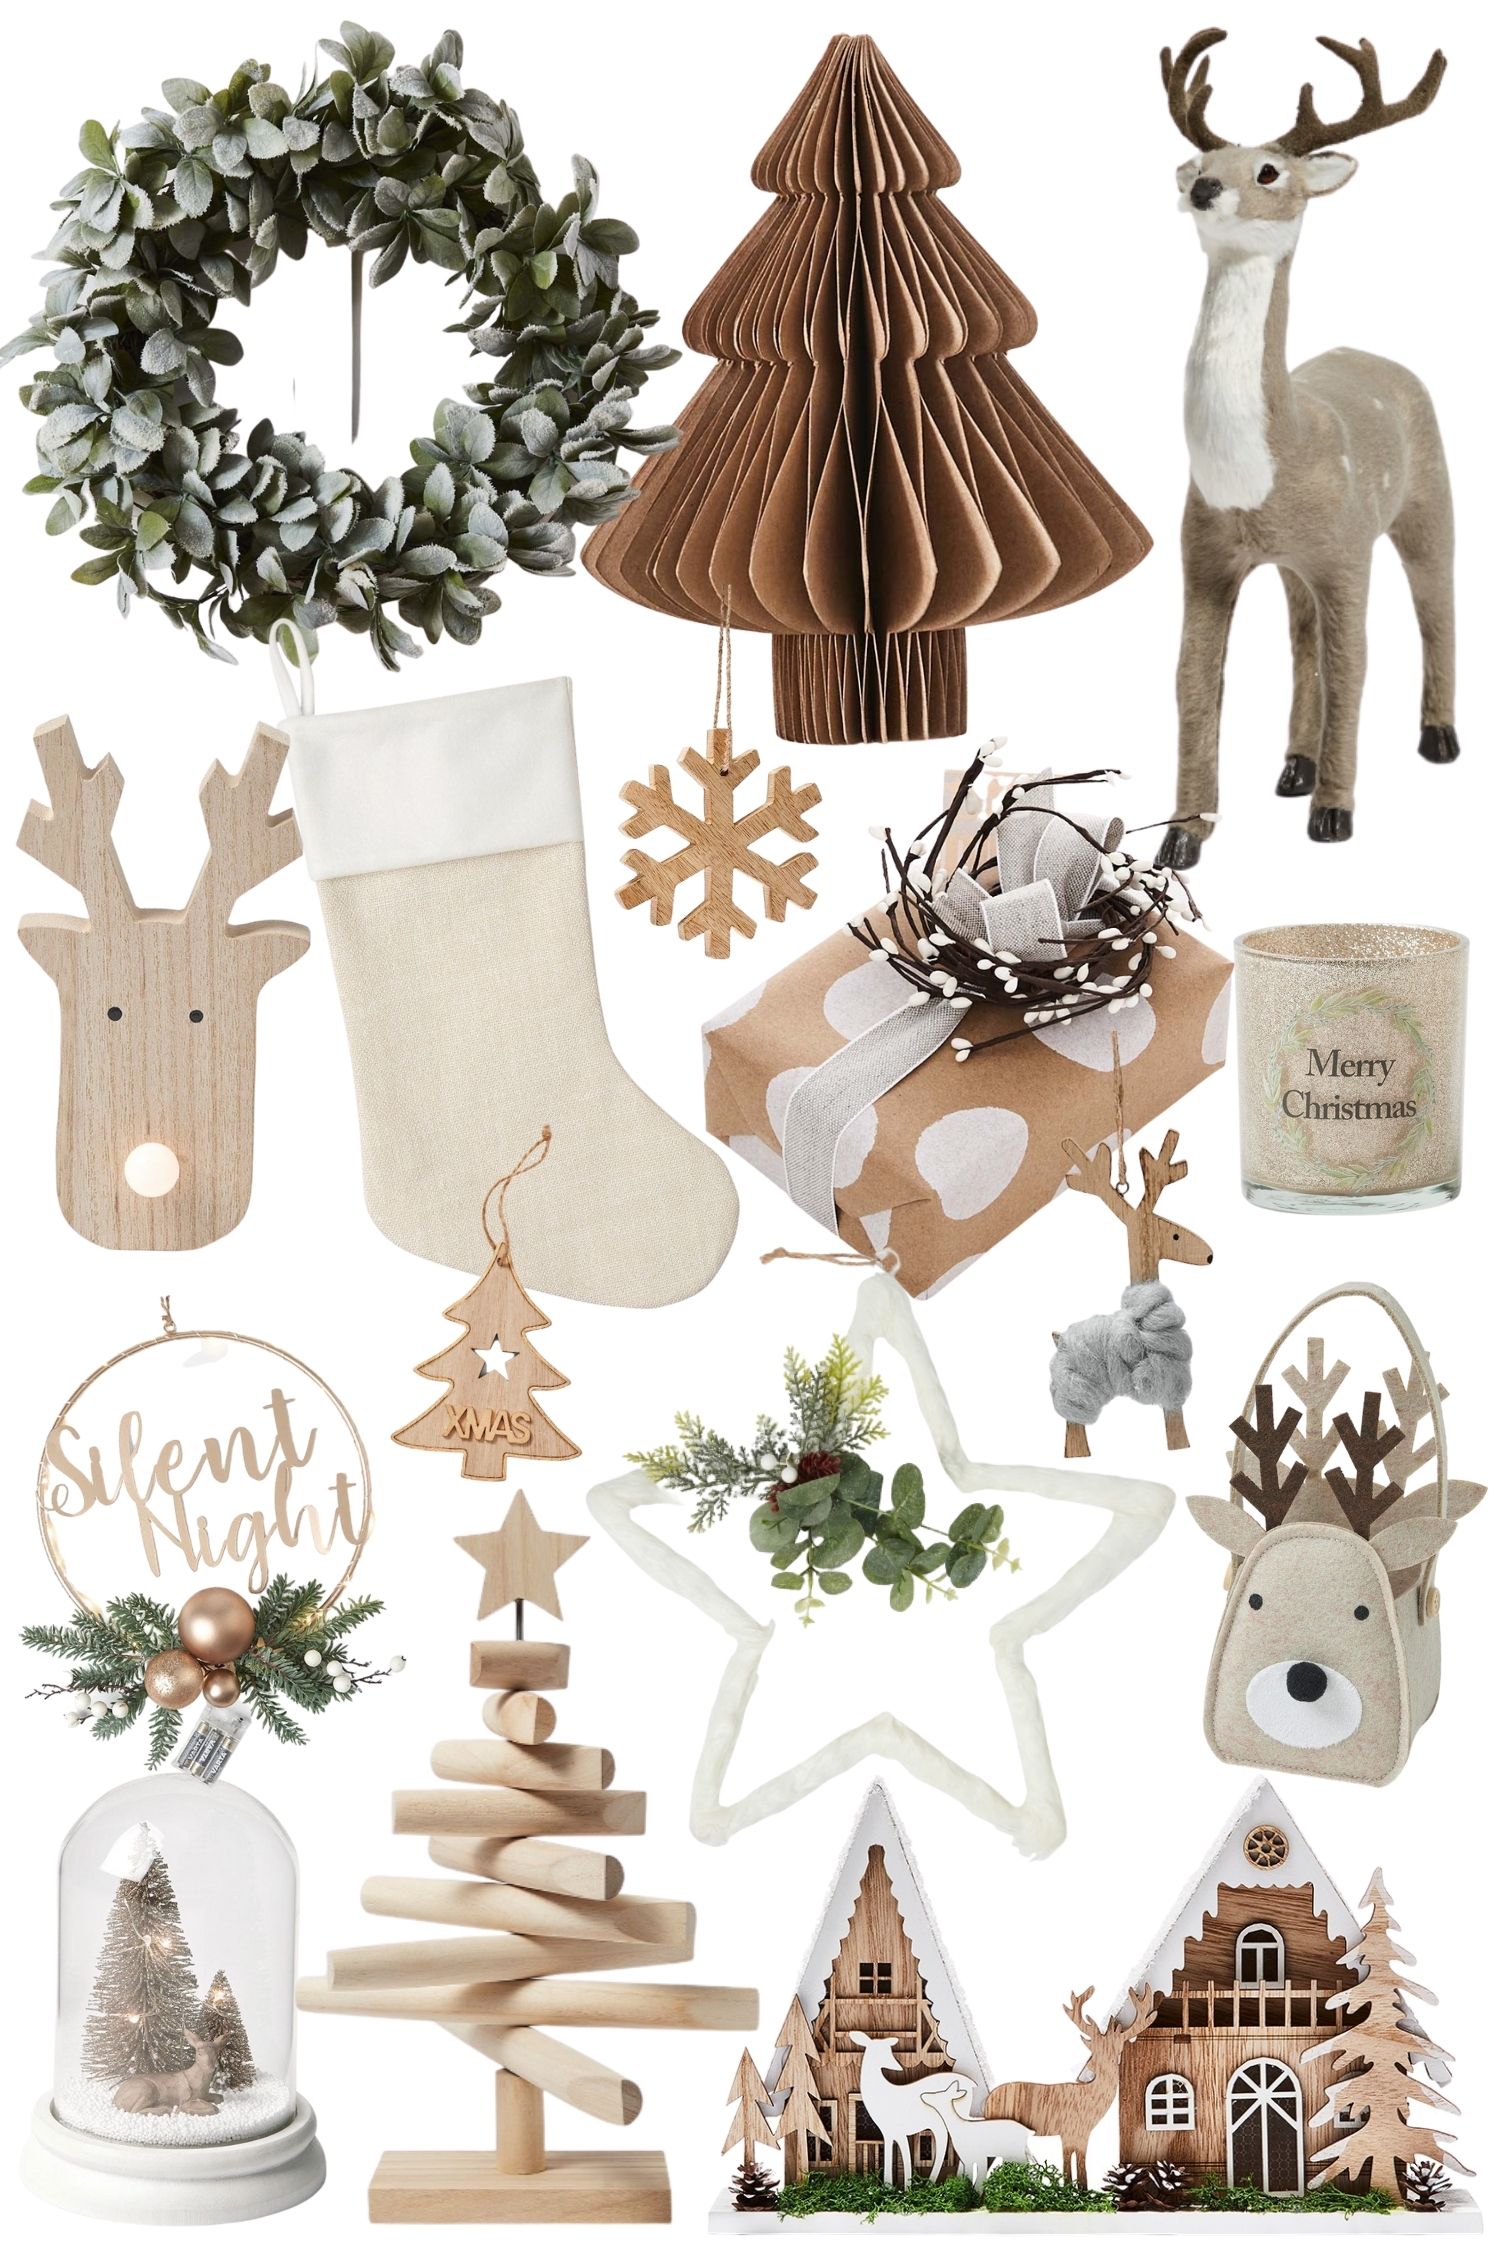 Скандинавская рождественская елка - украшения в виде животных